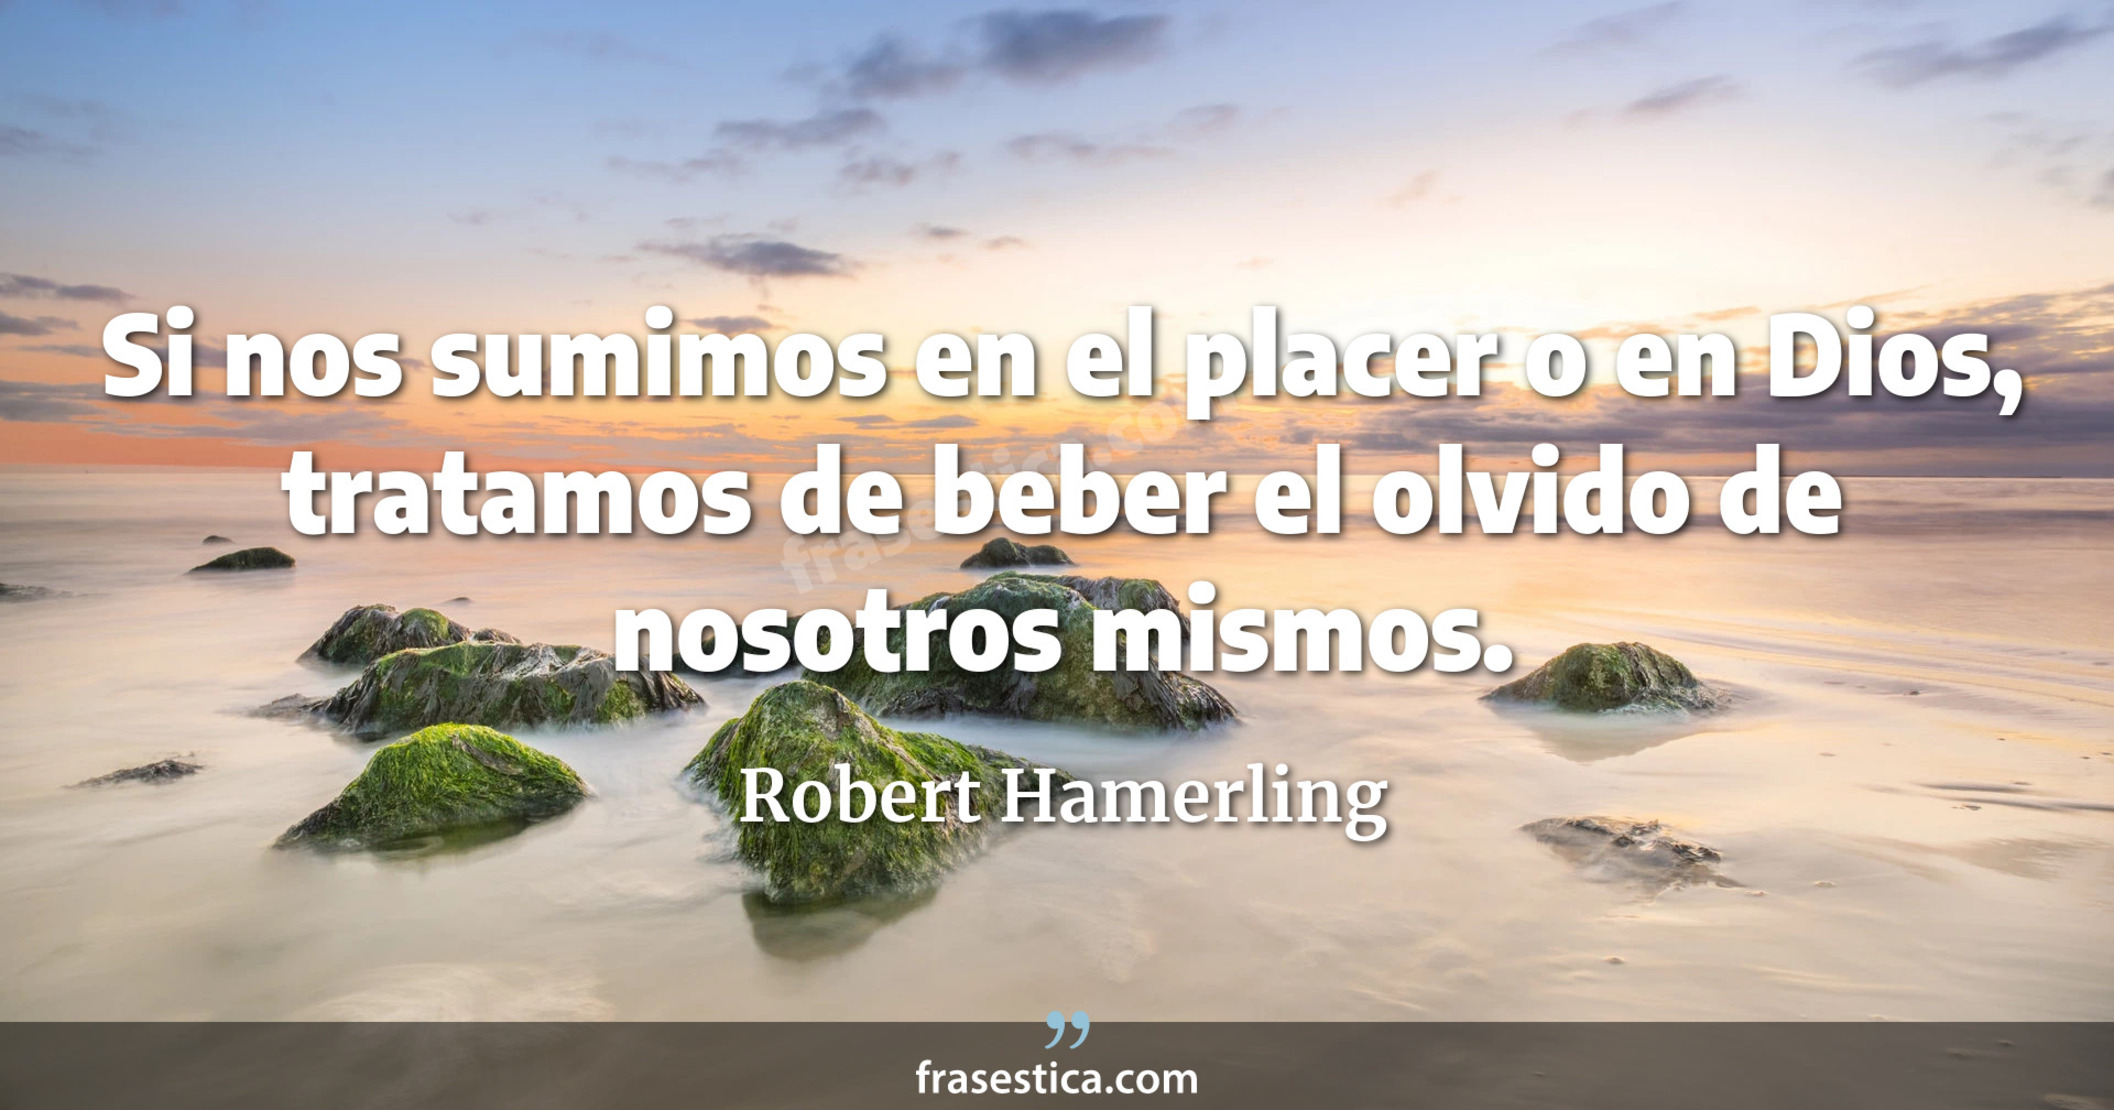 Si nos sumimos en el placer o en Dios, tratamos de beber el olvido de nosotros mismos. - Robert Hamerling